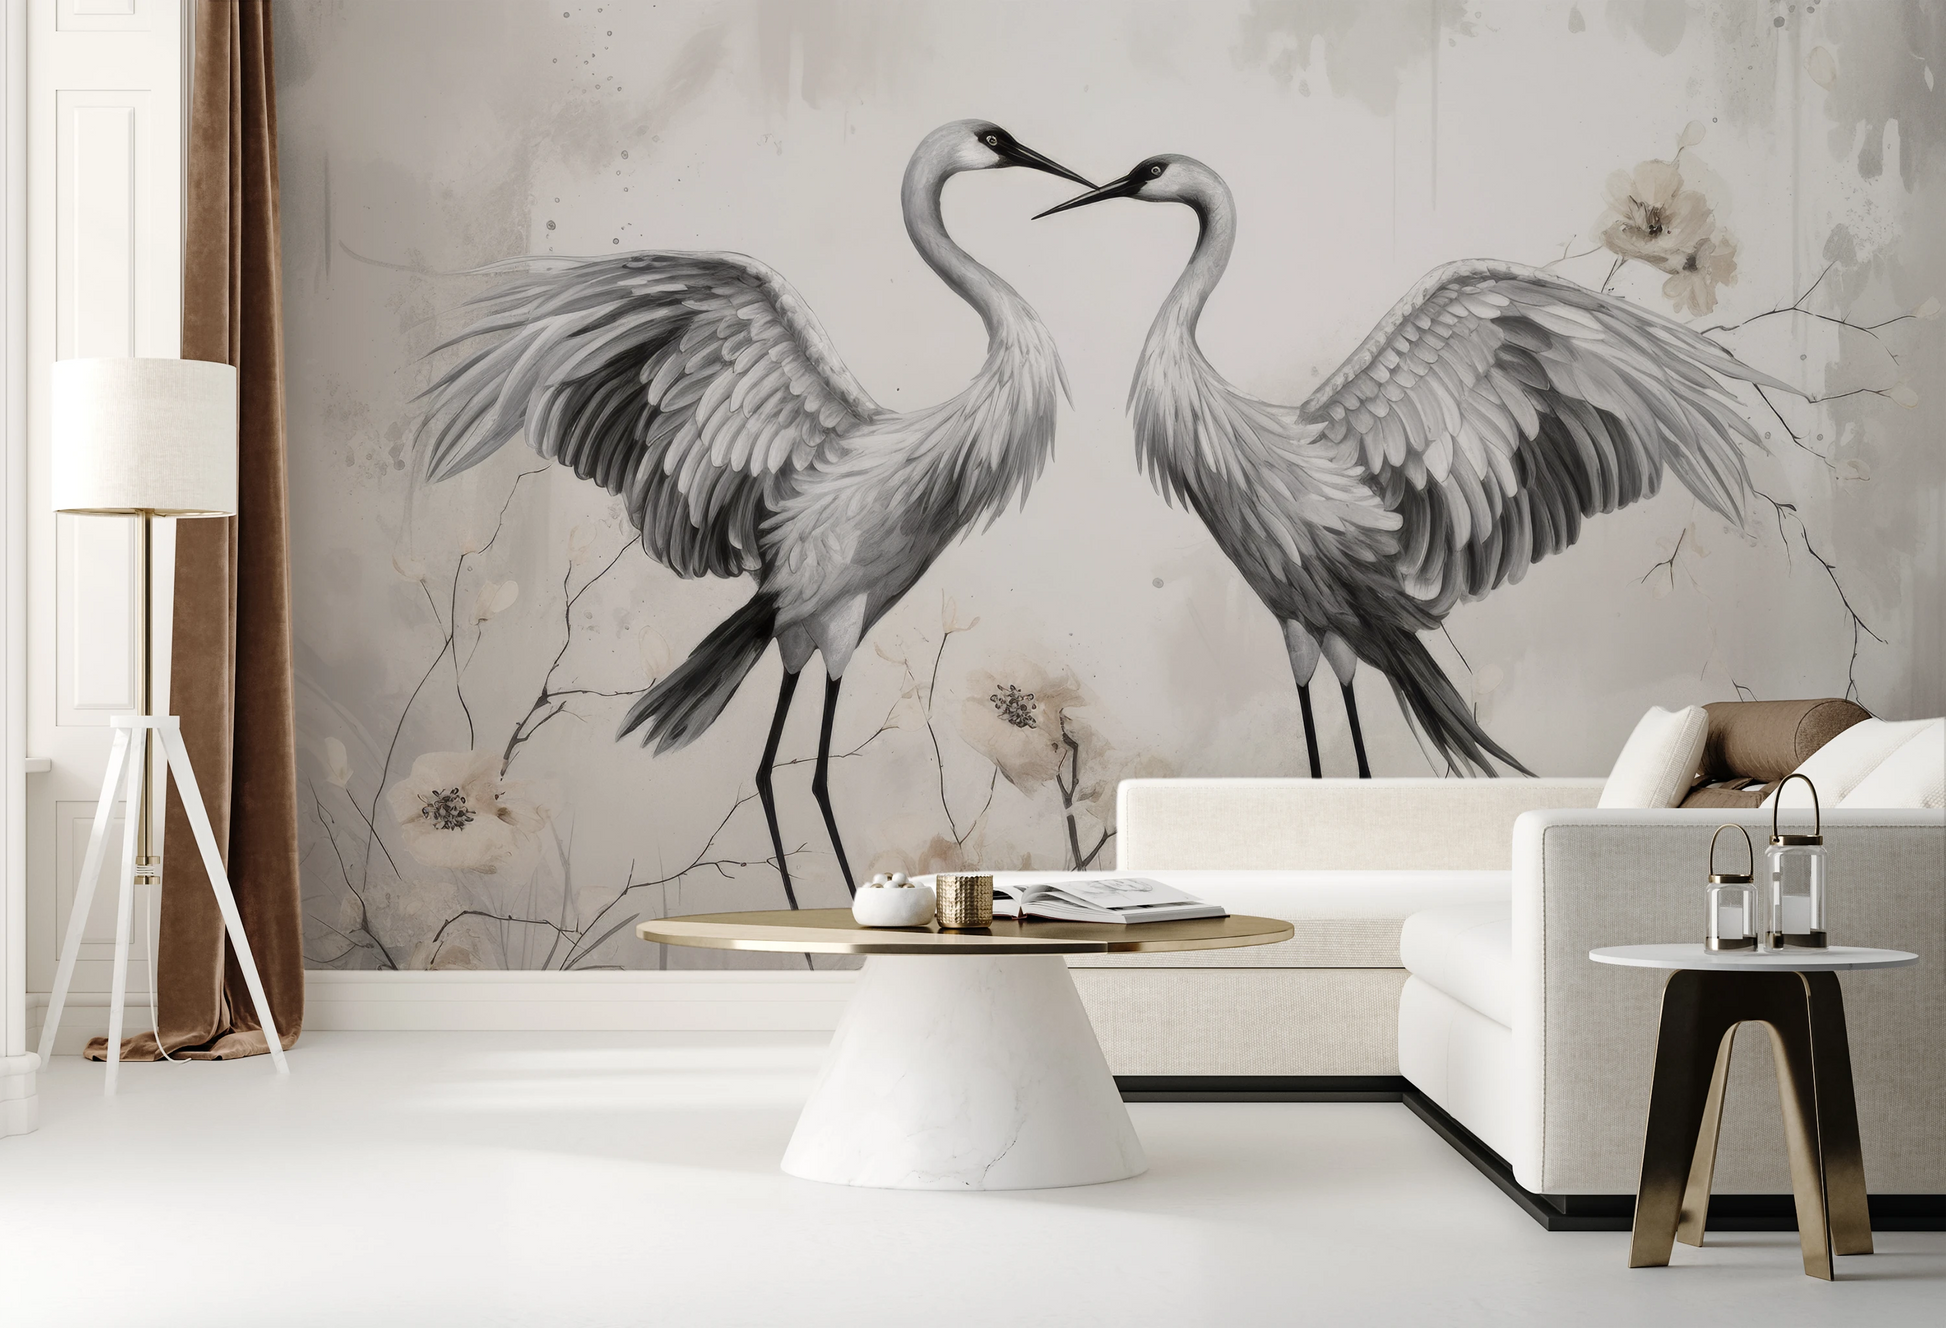 Fototapeta malowana o nazwie Elegant Cranes pokazana w aranżacji wnętrza.